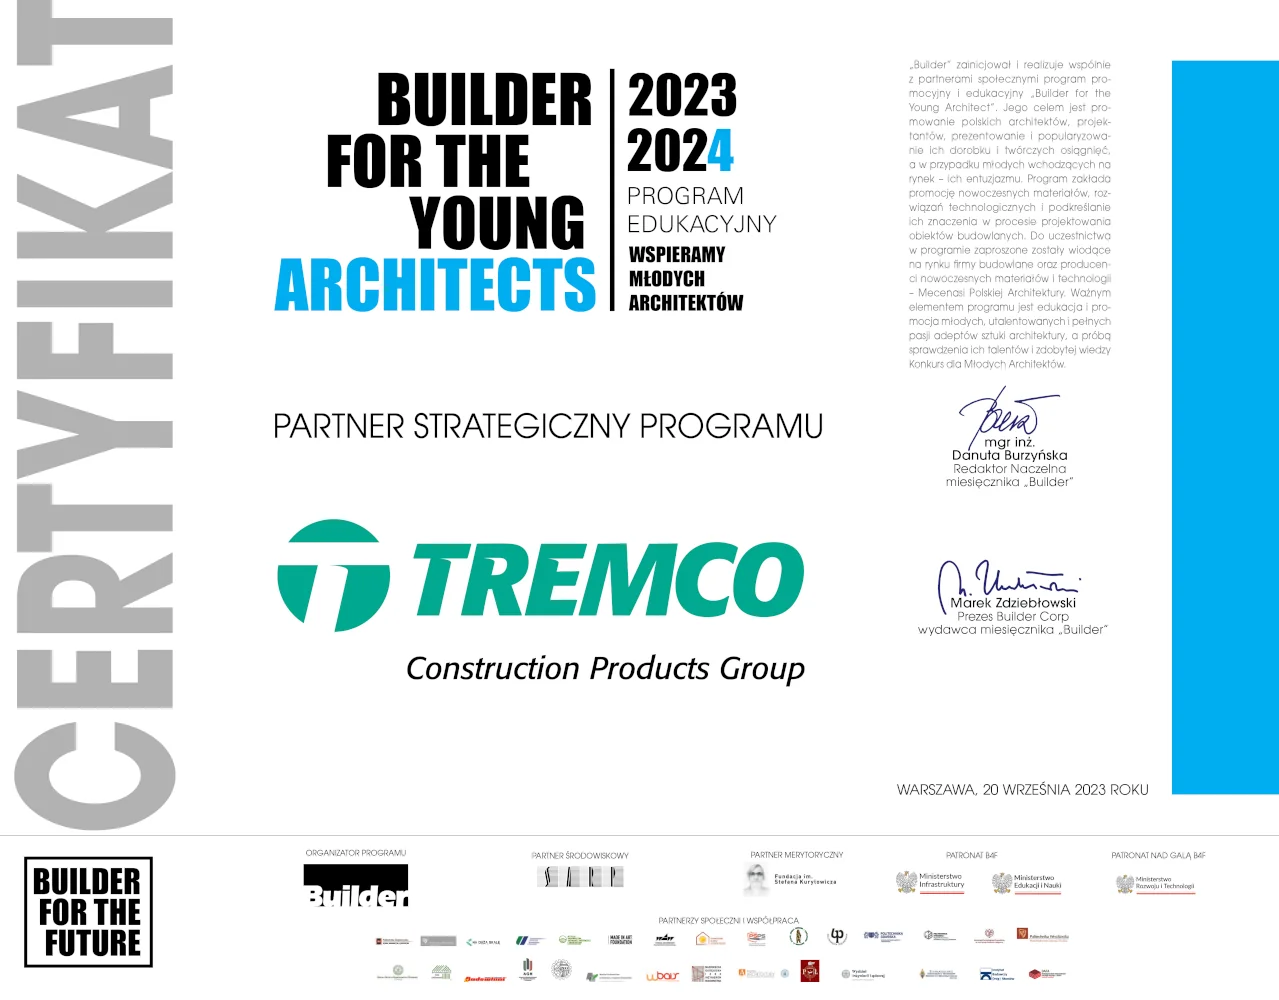 Tremco CPG Poland partnerem strategicznym programu Builder For The Young Architects